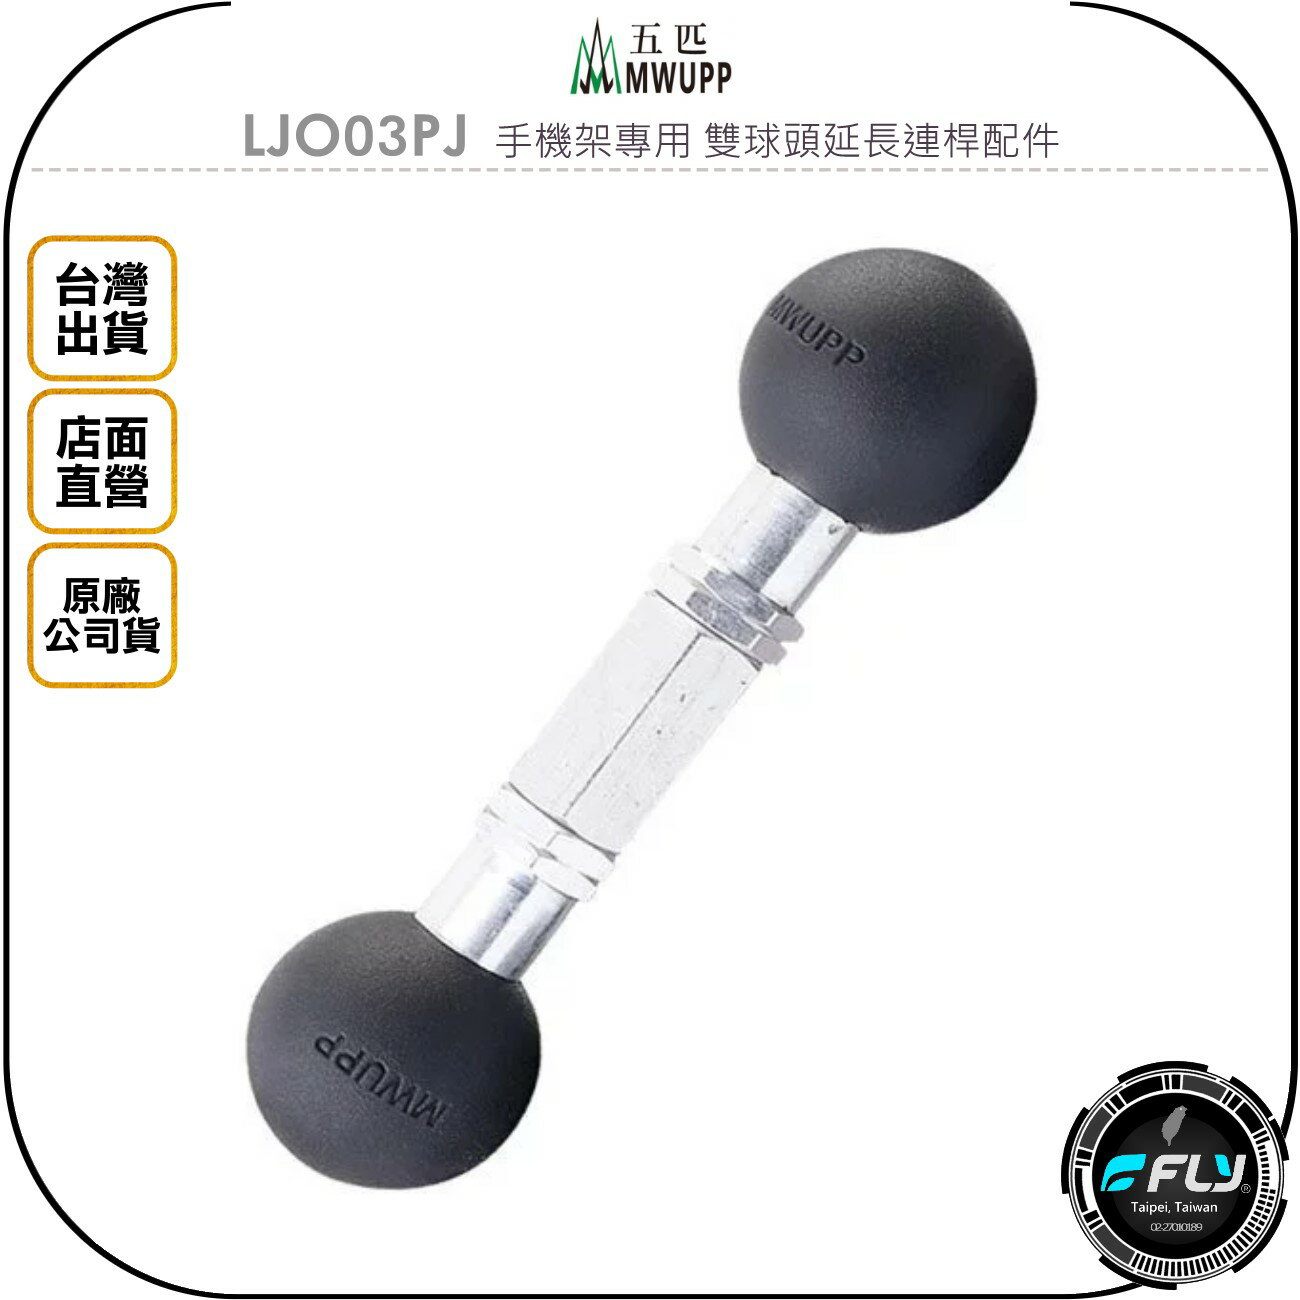 《飛翔無線3C》MWUPP 五匹 LJQ03PJ 手機架專用 雙球頭延長連桿配件◉公司貨◉機車架安裝